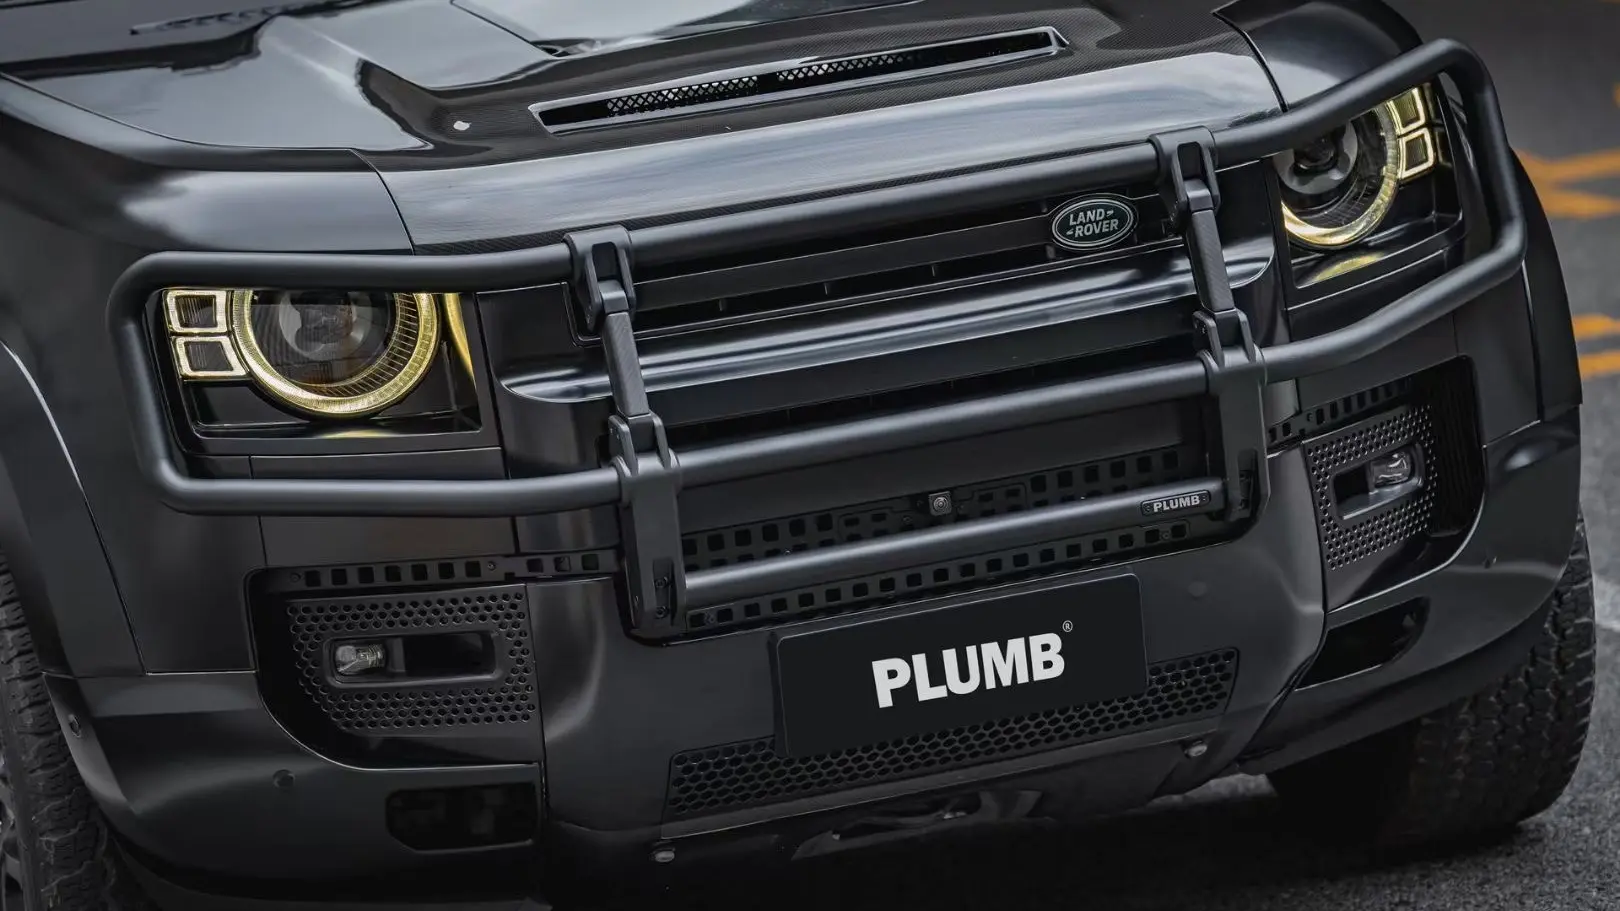 PLUMB المصد الأمامي Bull Bar لصورة Land Rover Defender